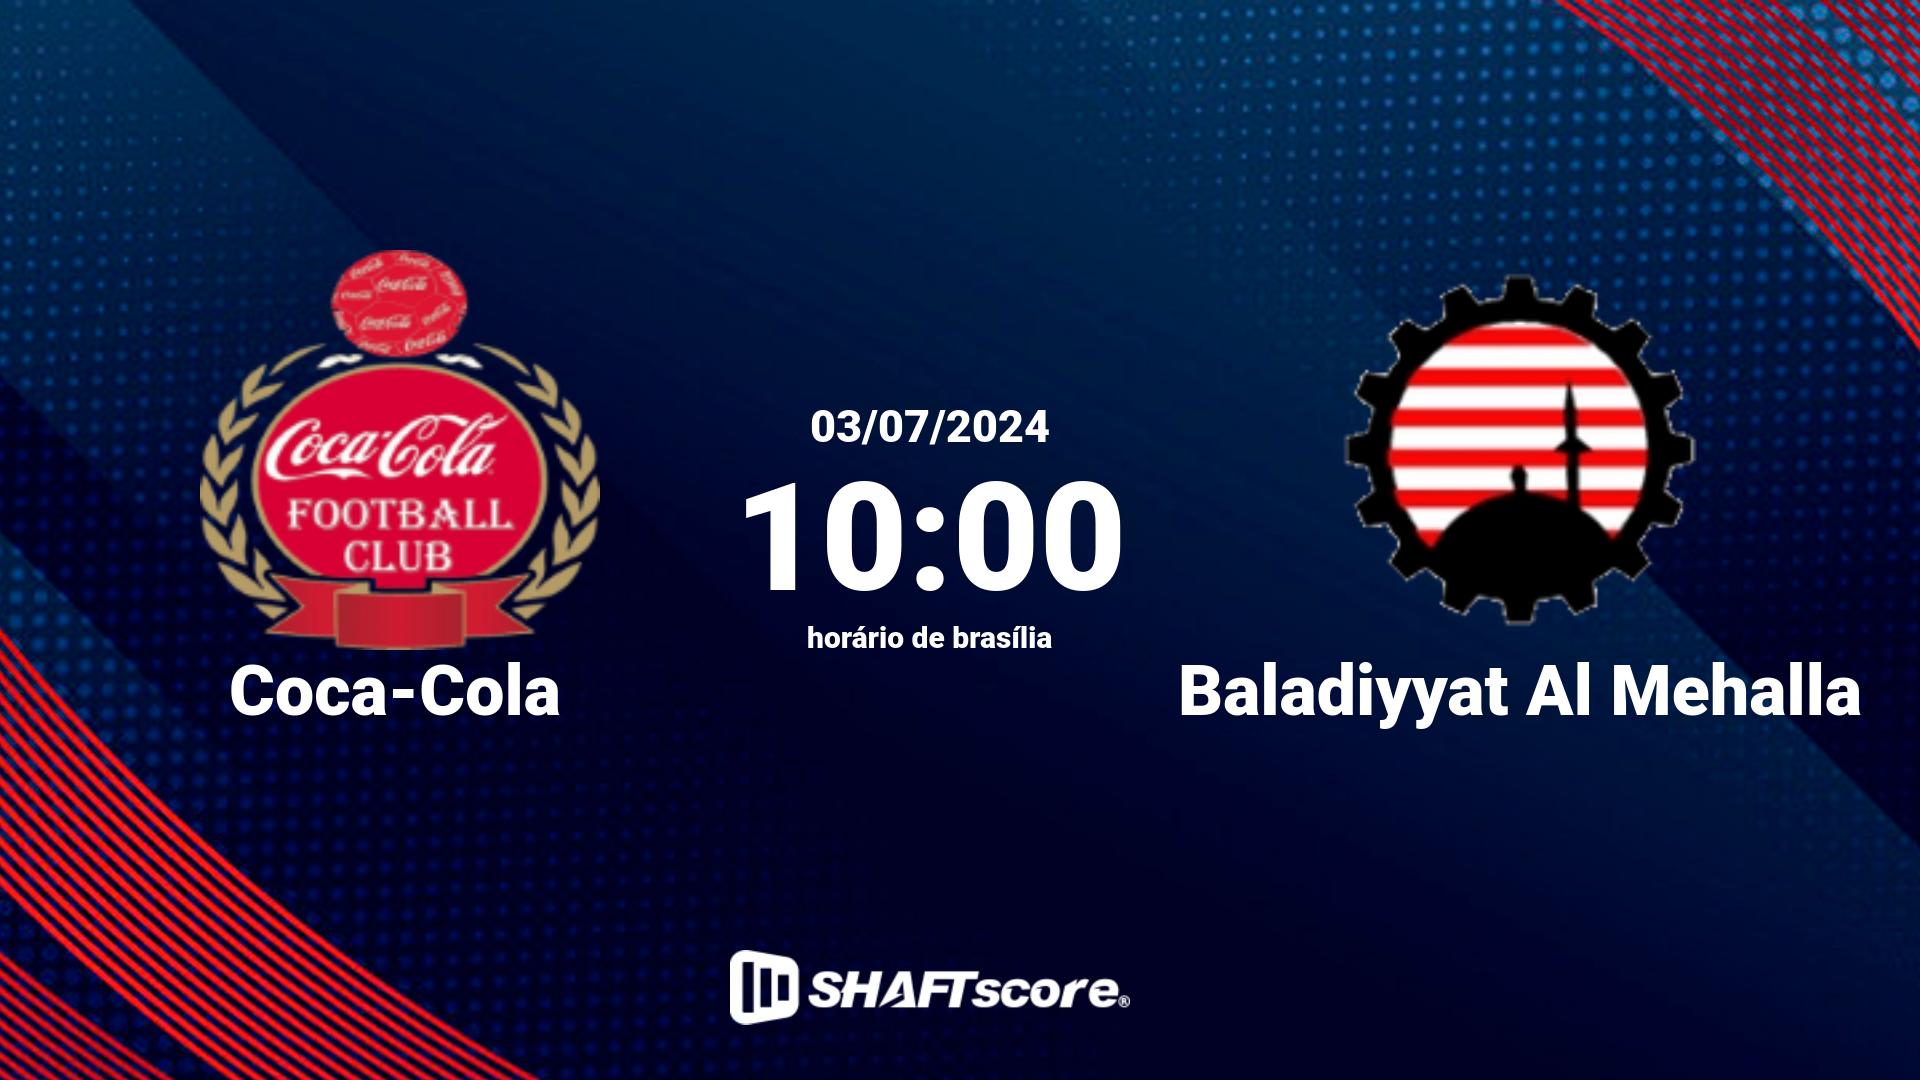 Estatísticas do jogo Coca-Cola vs Baladiyyat Al Mehalla 03.07 10:00